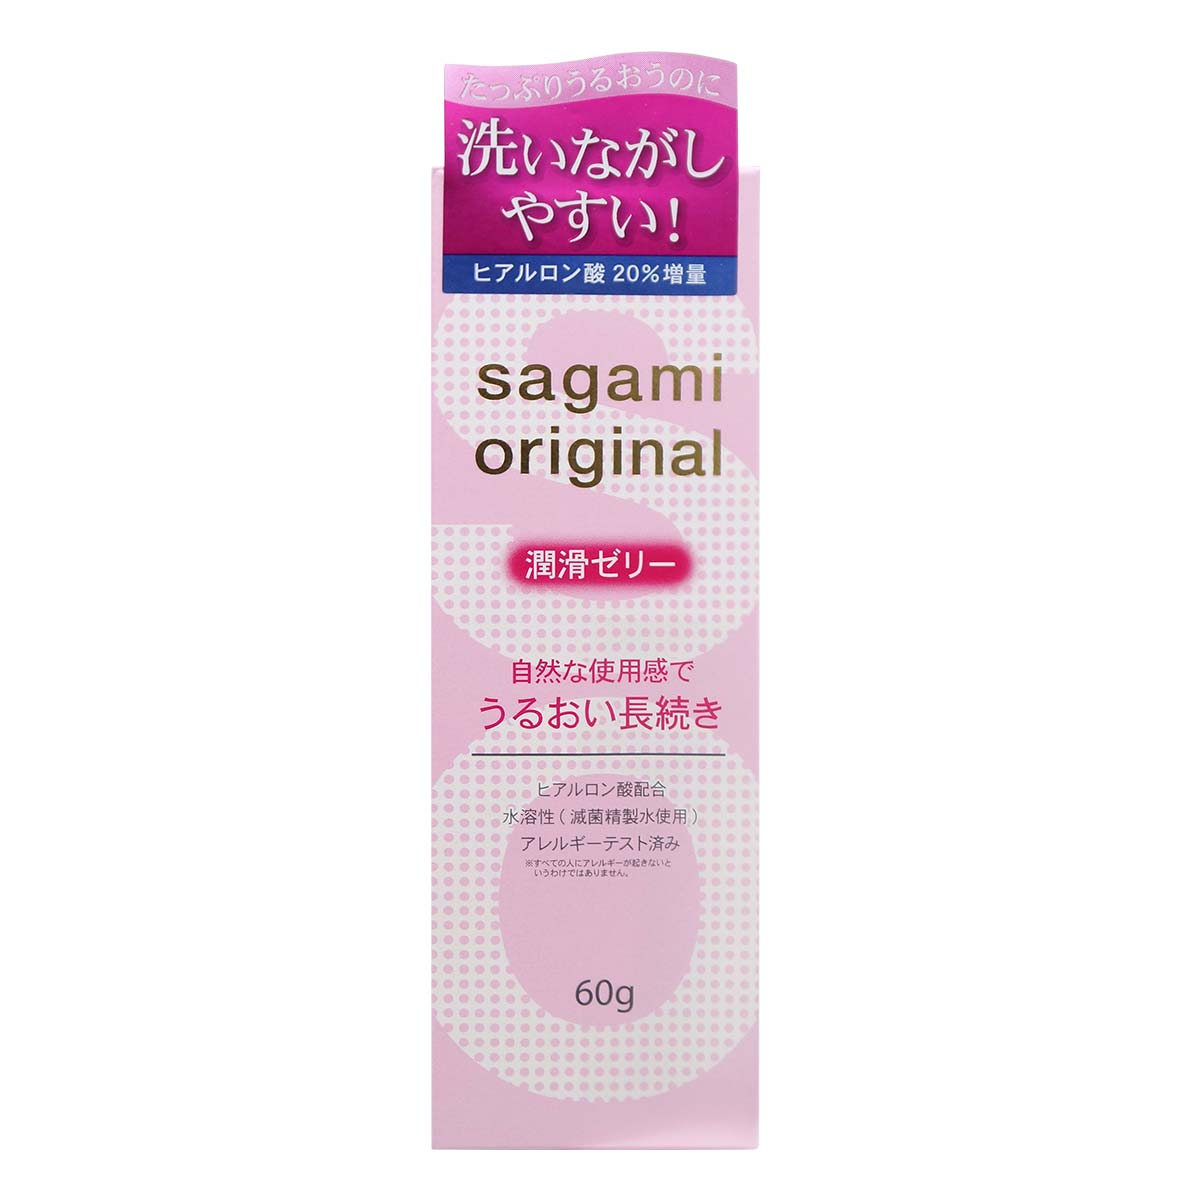 Sagami Original Lubricating Gel 60g Water-based Lubricant (Defective Packaging)-p_2